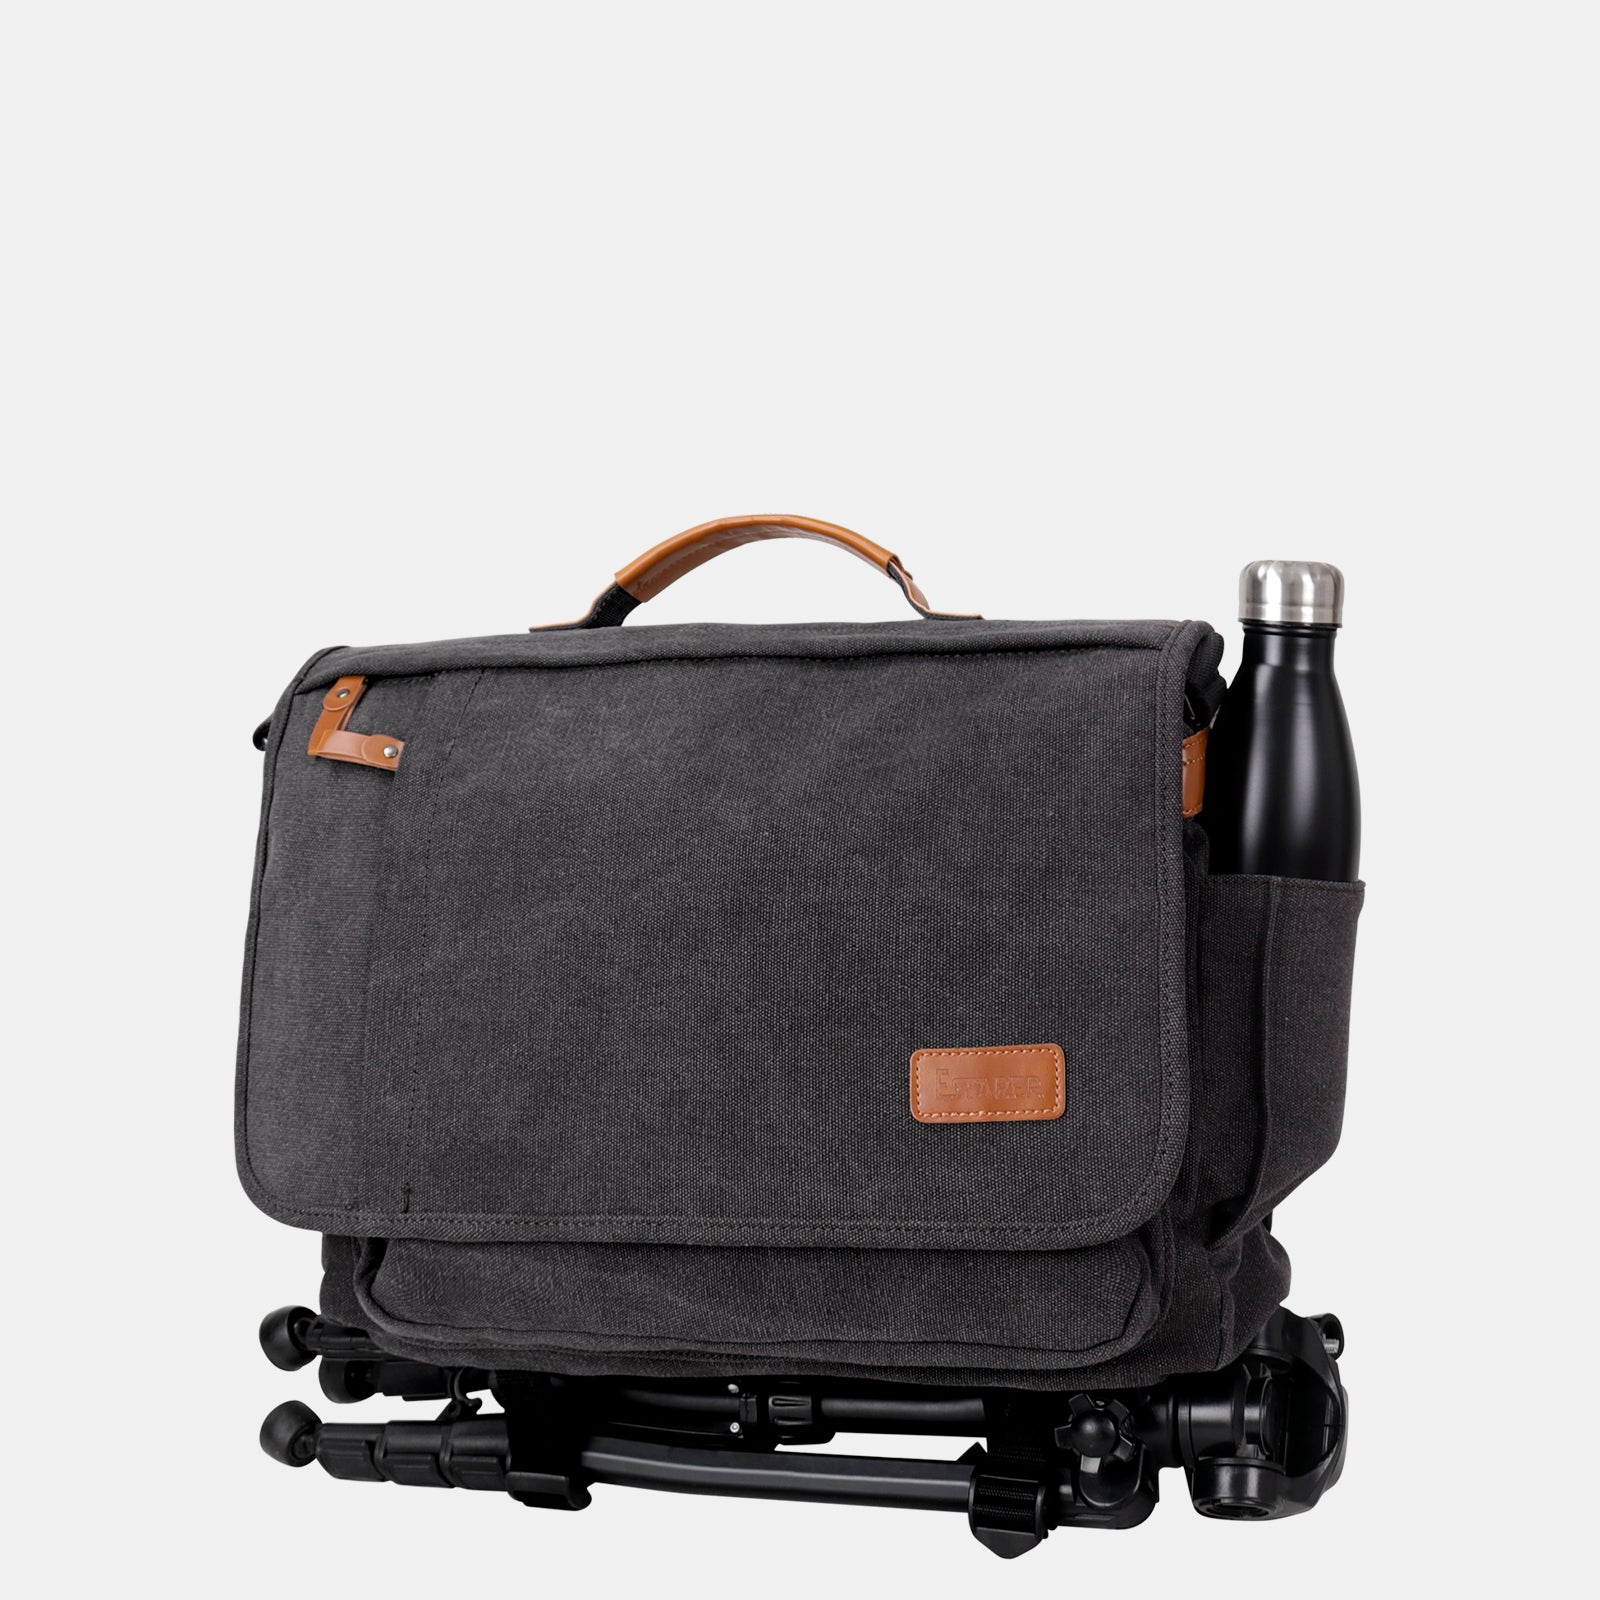 Estarer Photo Bag SLR/DSLR/SLR Camera Shoulder Bag